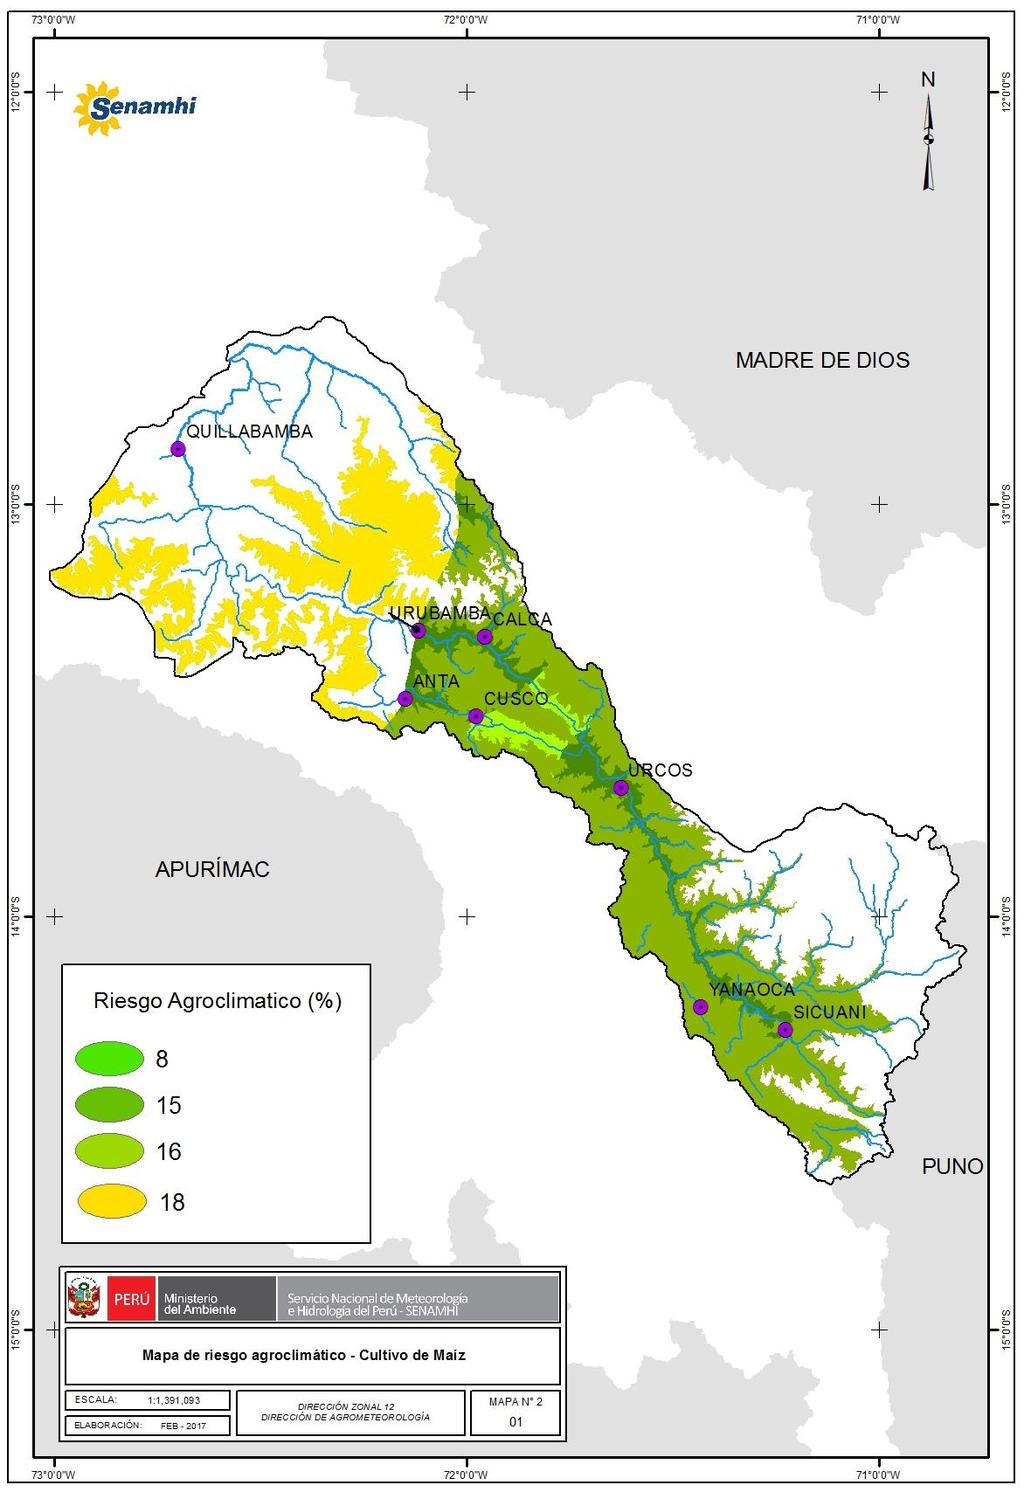 Porcentaje de riesgo agroclimático para el cultivo de maíz por condiciones de lluvia y temperaturas extremas en la cuenca del río Urubamba, período enero marzo 2017. Mapa N 2 Porcentaje de riesgo.